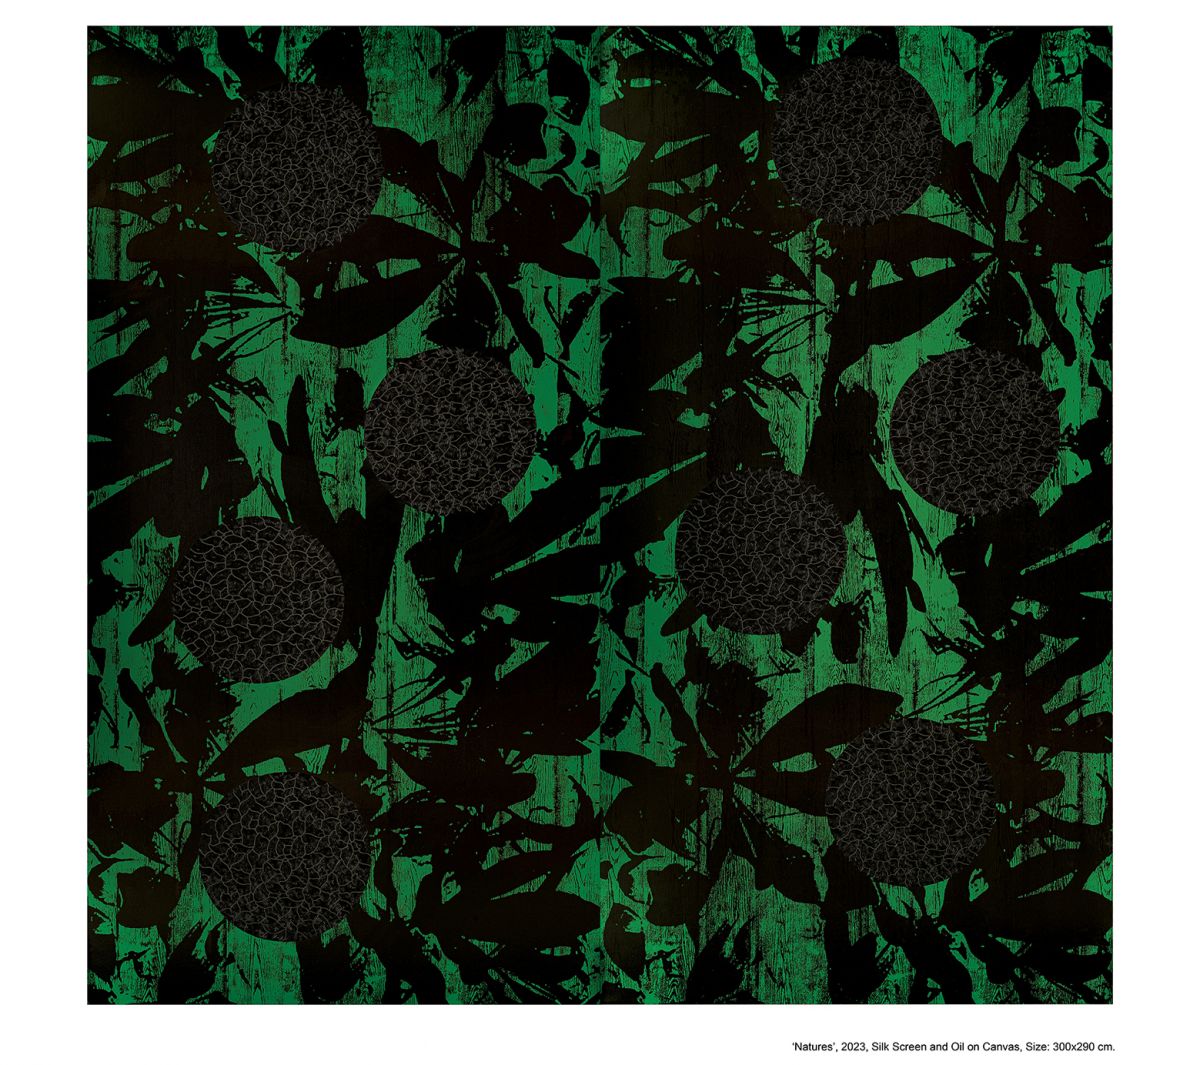 Green Natures, 2023 Holzdruck, Siebdruck, Öl auf Leinwand 290 x 450 cm © Levent Özdemir Courtesy Kai Middendorff Galerie, Frankfurt